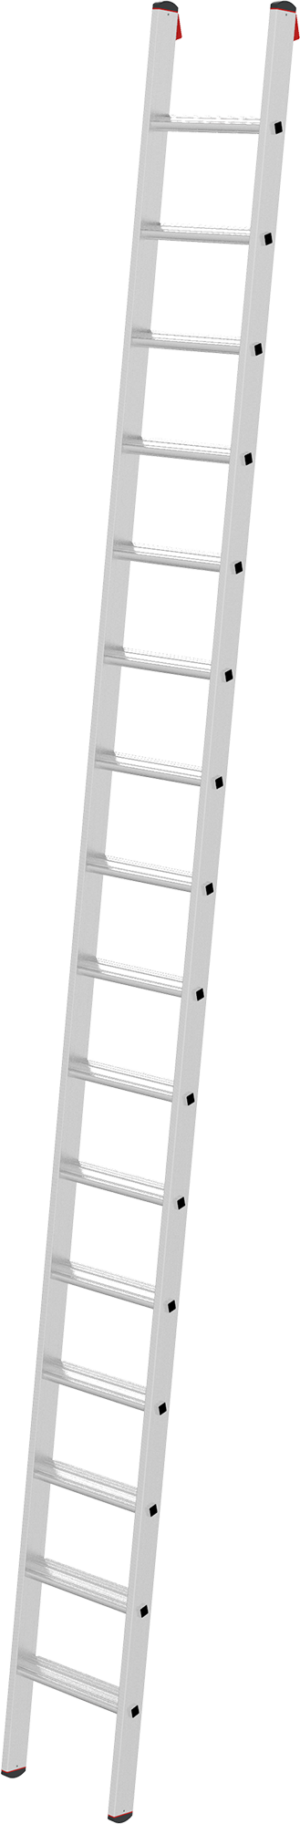 Профессиональная алюминиевая приставная лестница с развальцованными ступенями 80 мм NV3214 артикул 3214116